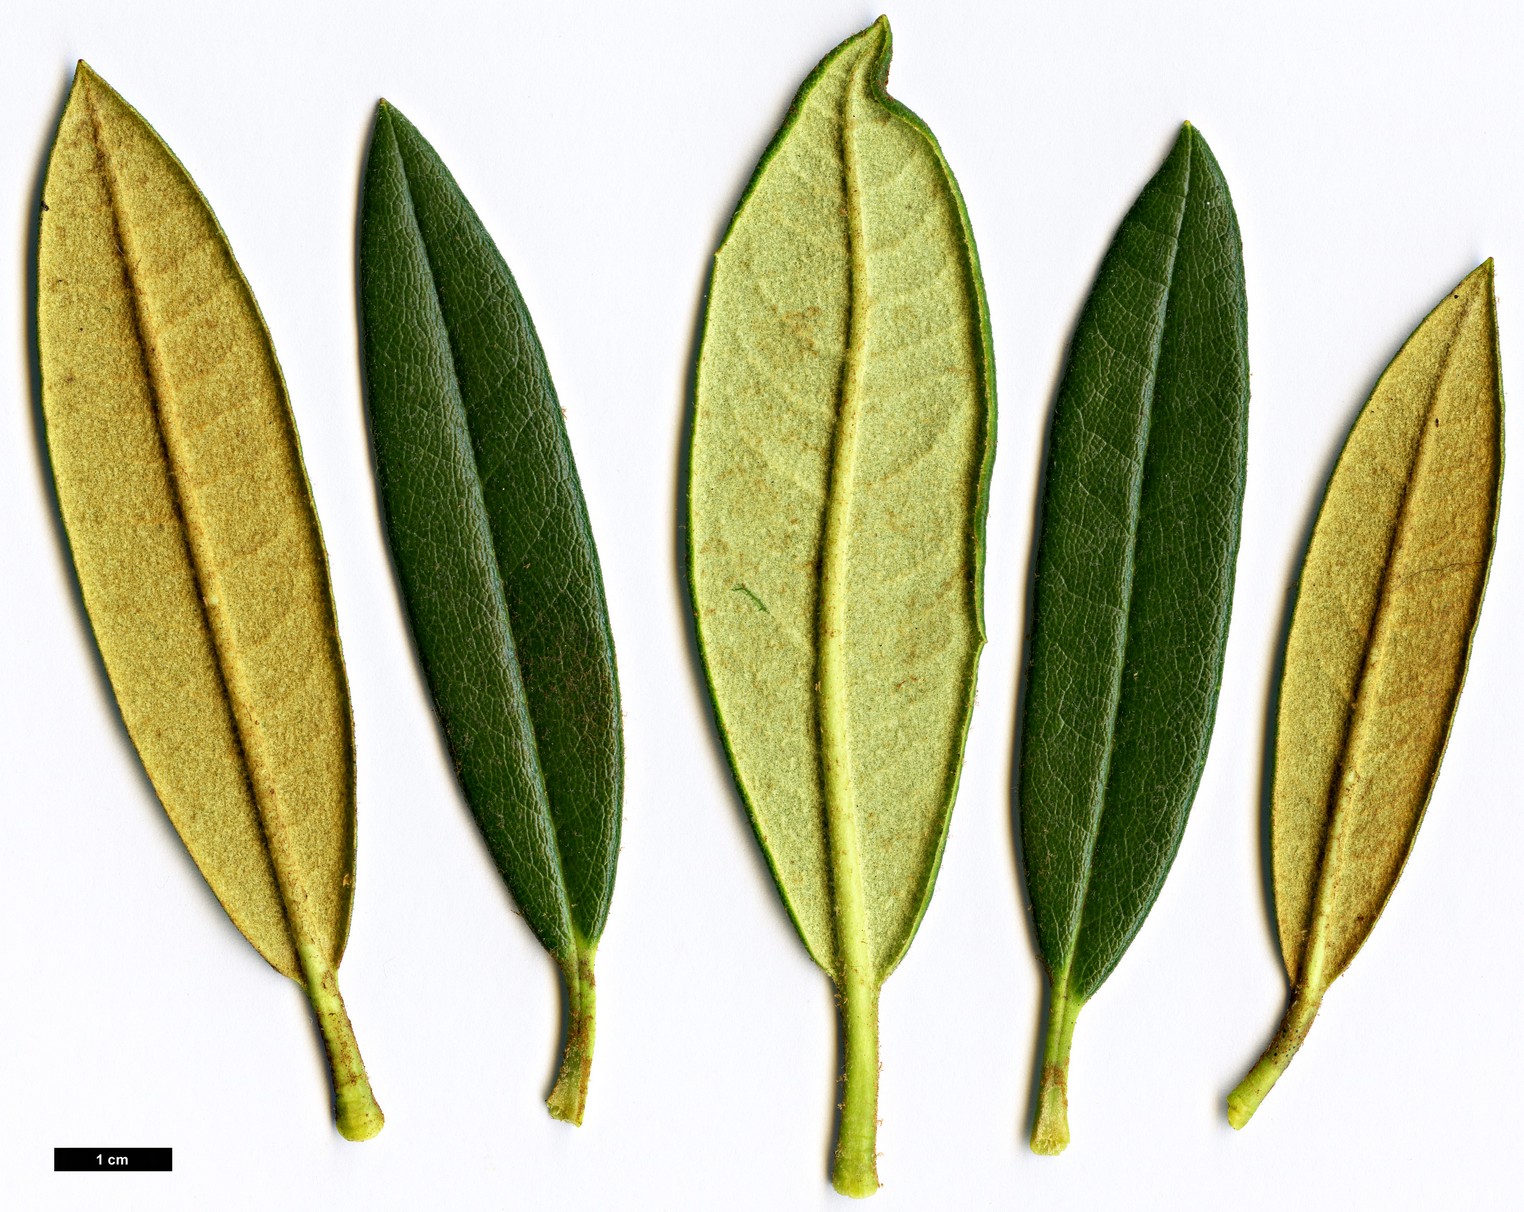 High resolution image: Family: Ericaceae - Genus: Rhododendron - Taxon: alutaceum - SpeciesSub: var. russotinctum Triplonaevium Group